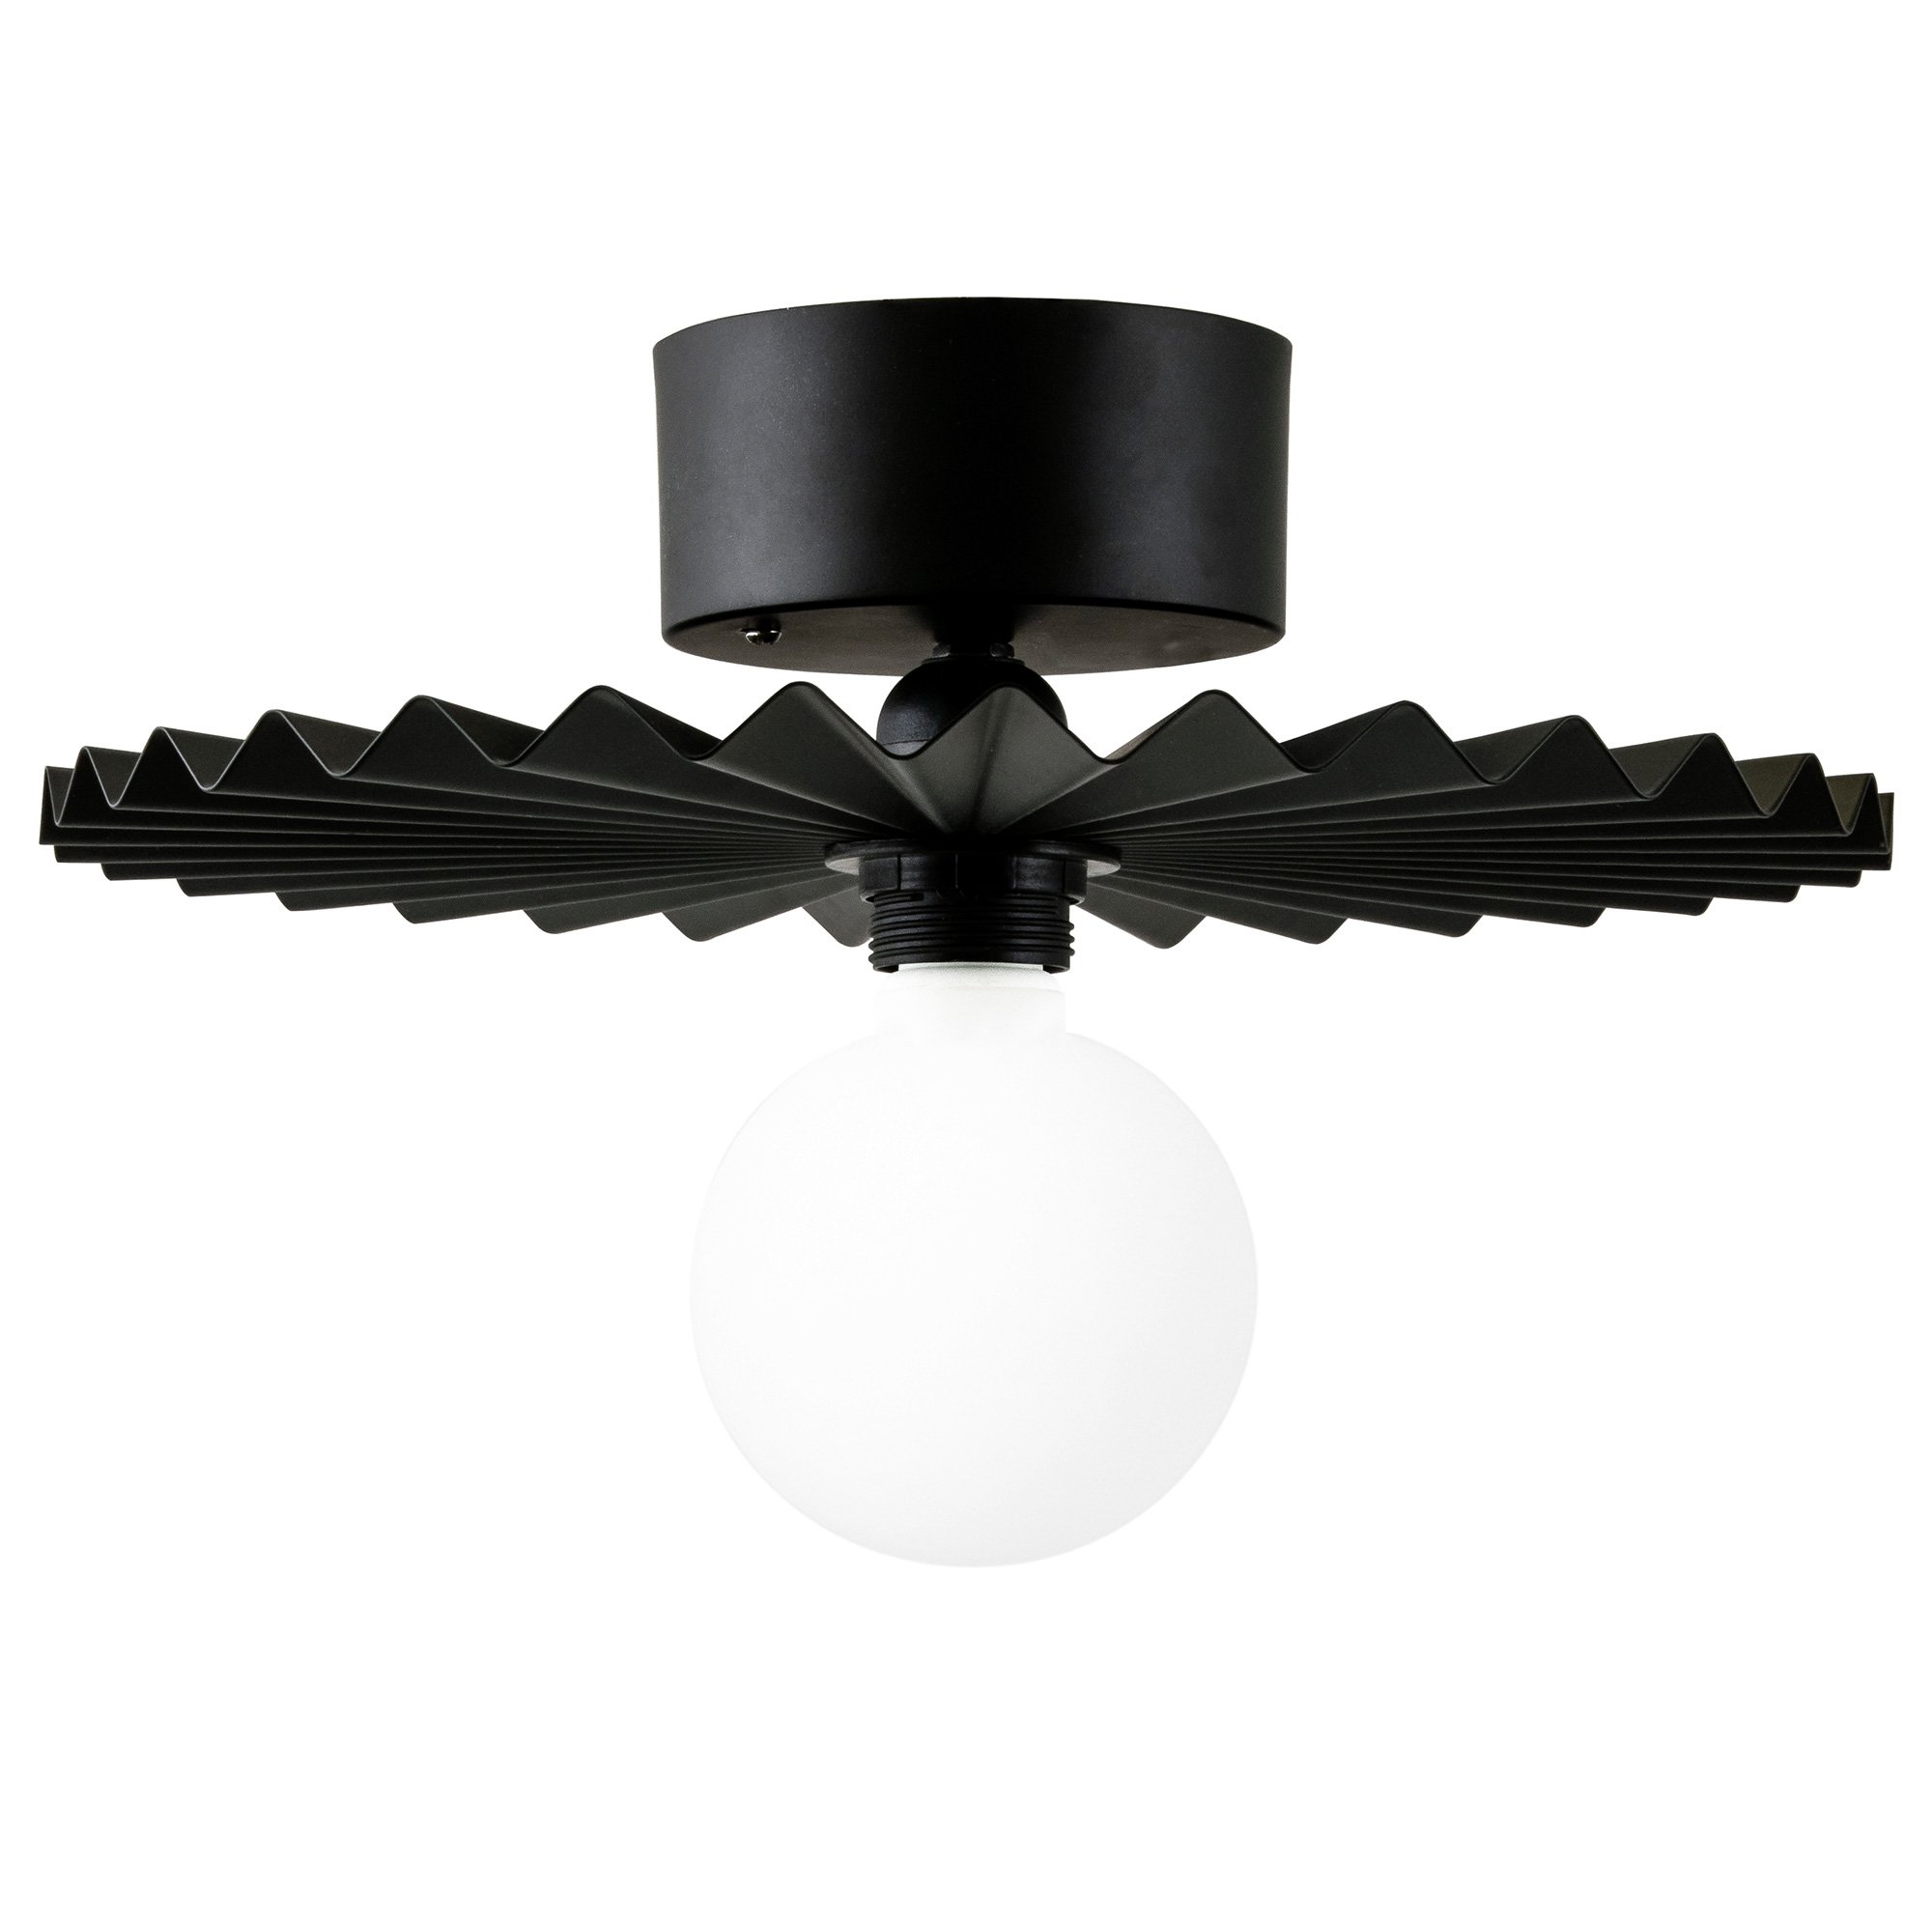 Globen Lighting Omega plafond 35 cm svart